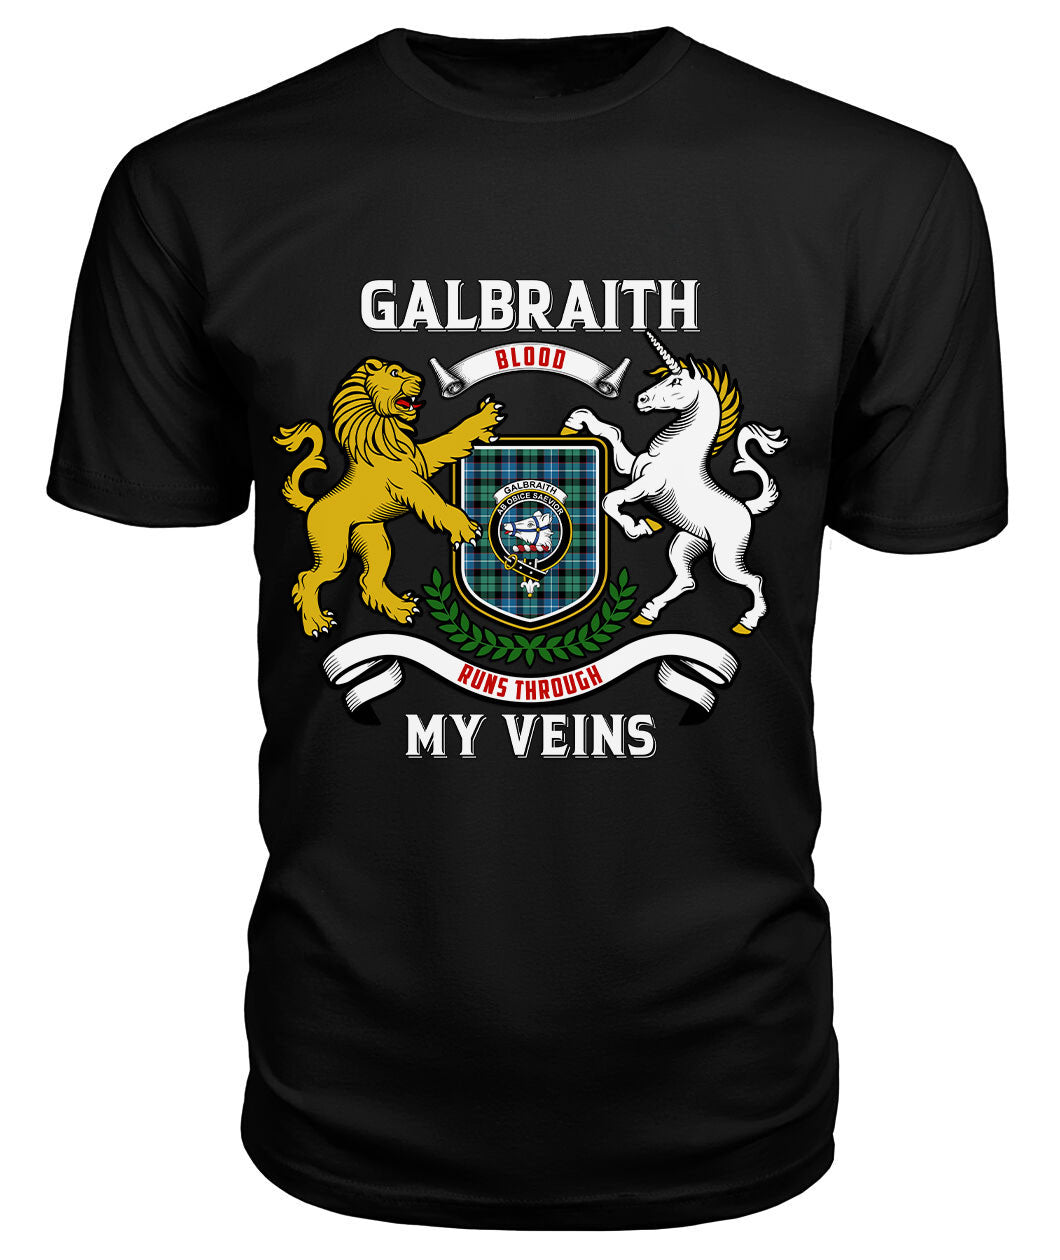 Galbraith Ancient Tartan Crest 2D T-shirt - Blood Runs Through My Veins Style